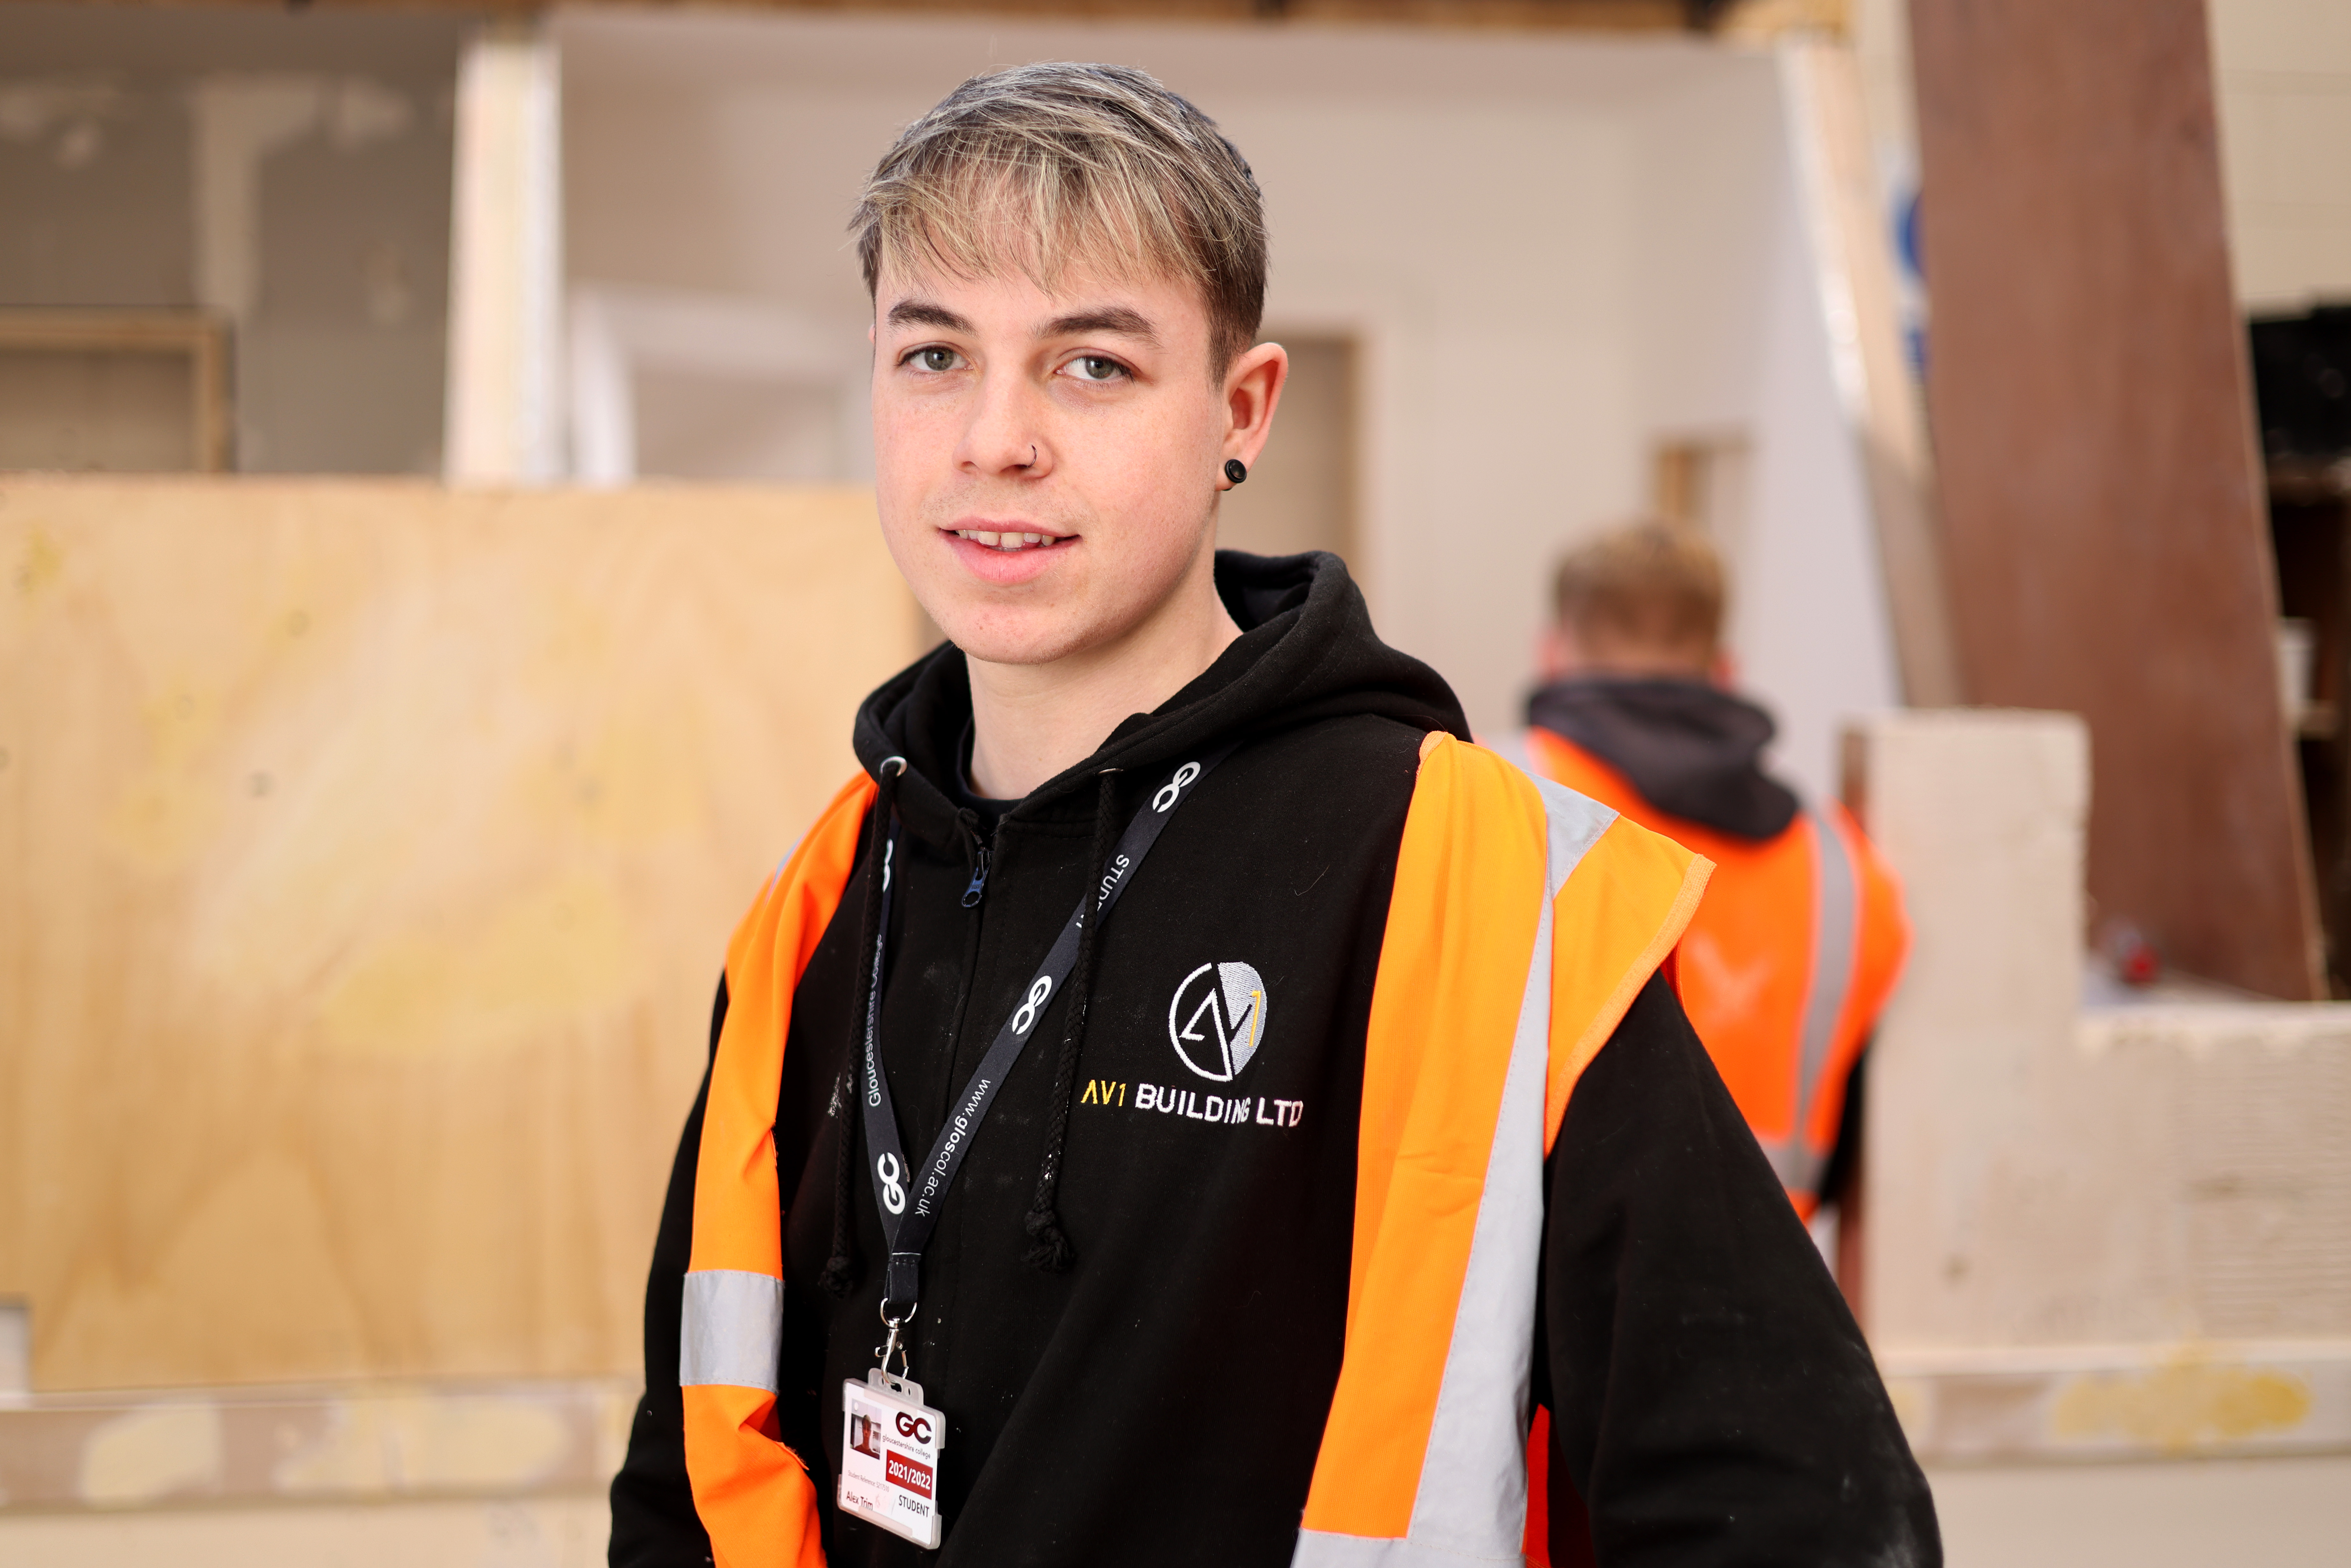 Meet Alex, Property Maintenance Operative Apprentice at AV1 Building Ltd